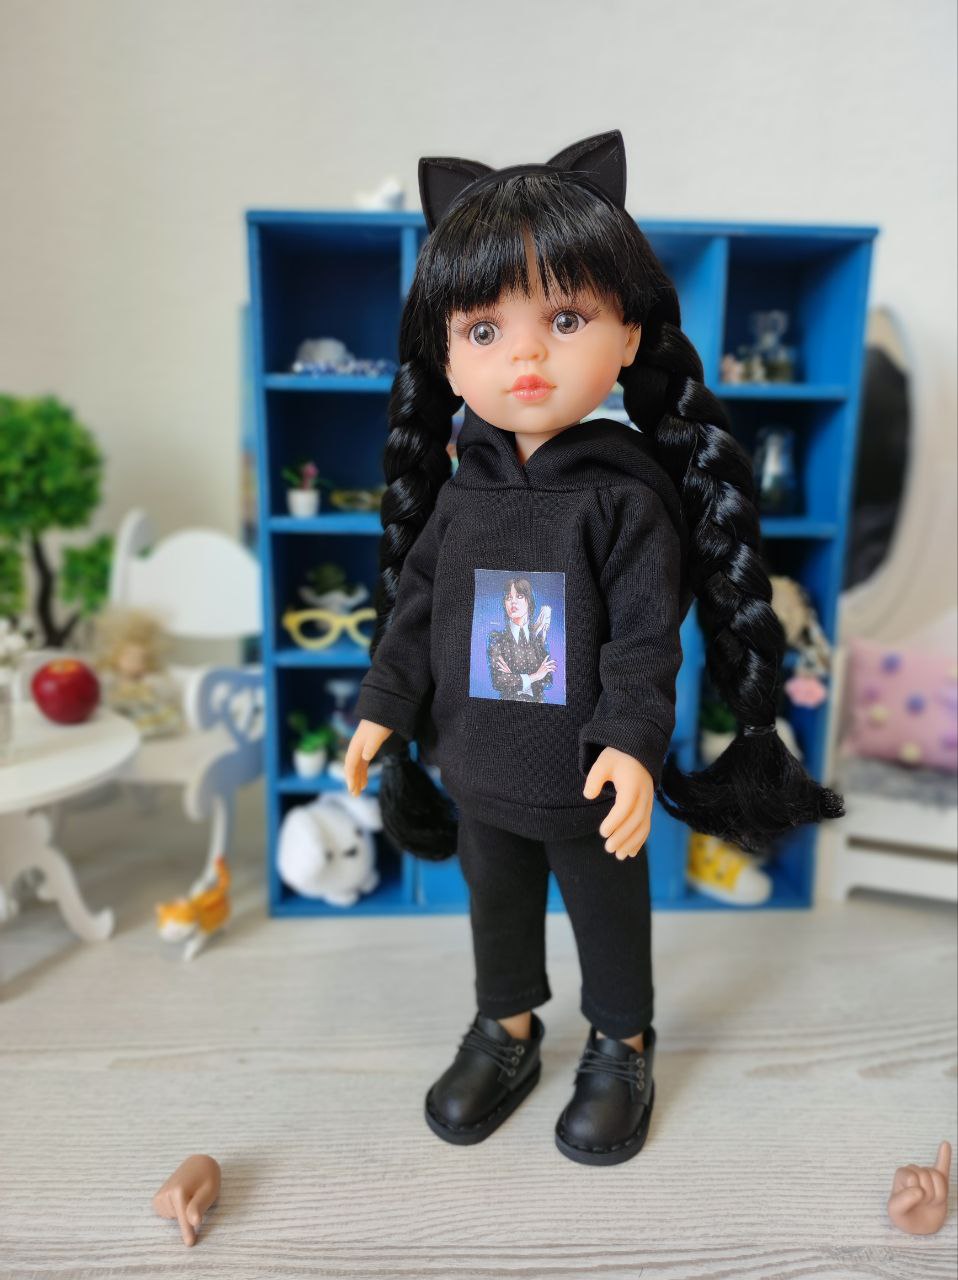 Спортивный костюм Wednesday / Венсдей черный для кукол Паола Рейна, 32 см Paola Reina HM-KA-10038 #Tiptovara#